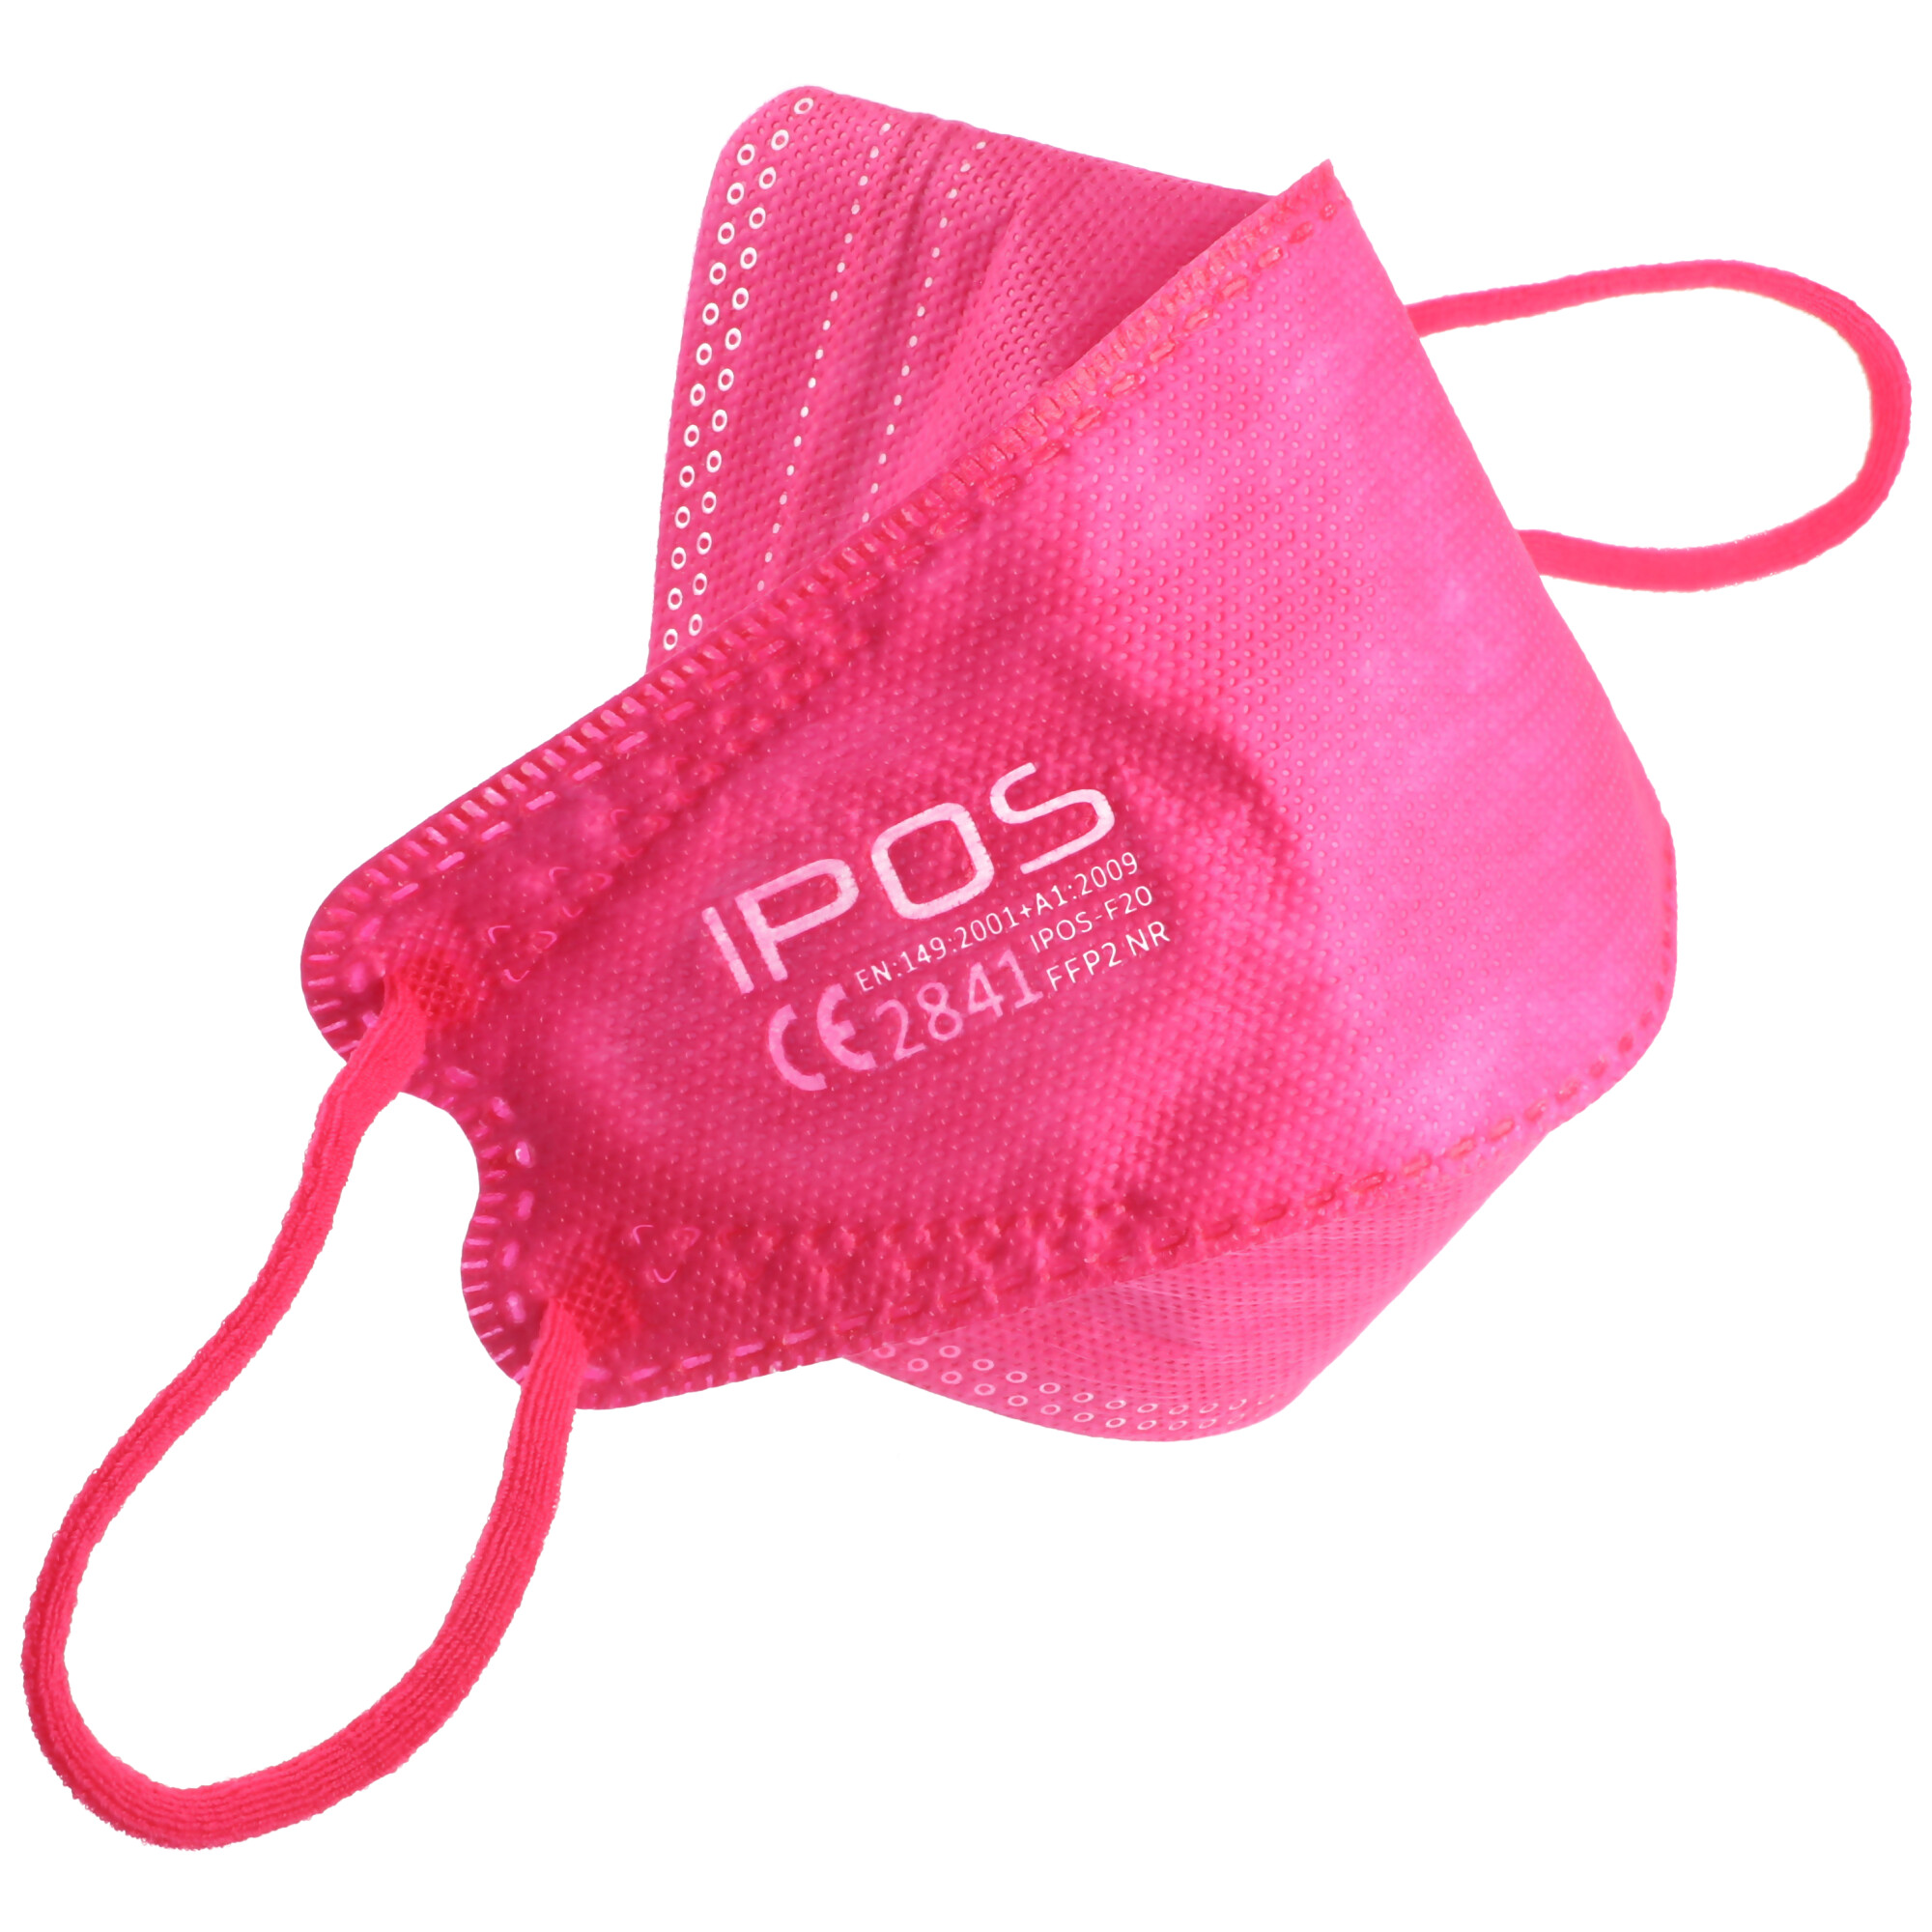 10 Stück FFP2 Maske Pink, zertifiziert nach DIN EN149:2001+A1:2009, partikelfiltrierende Halbmaske, FFP2 Schutzmaske